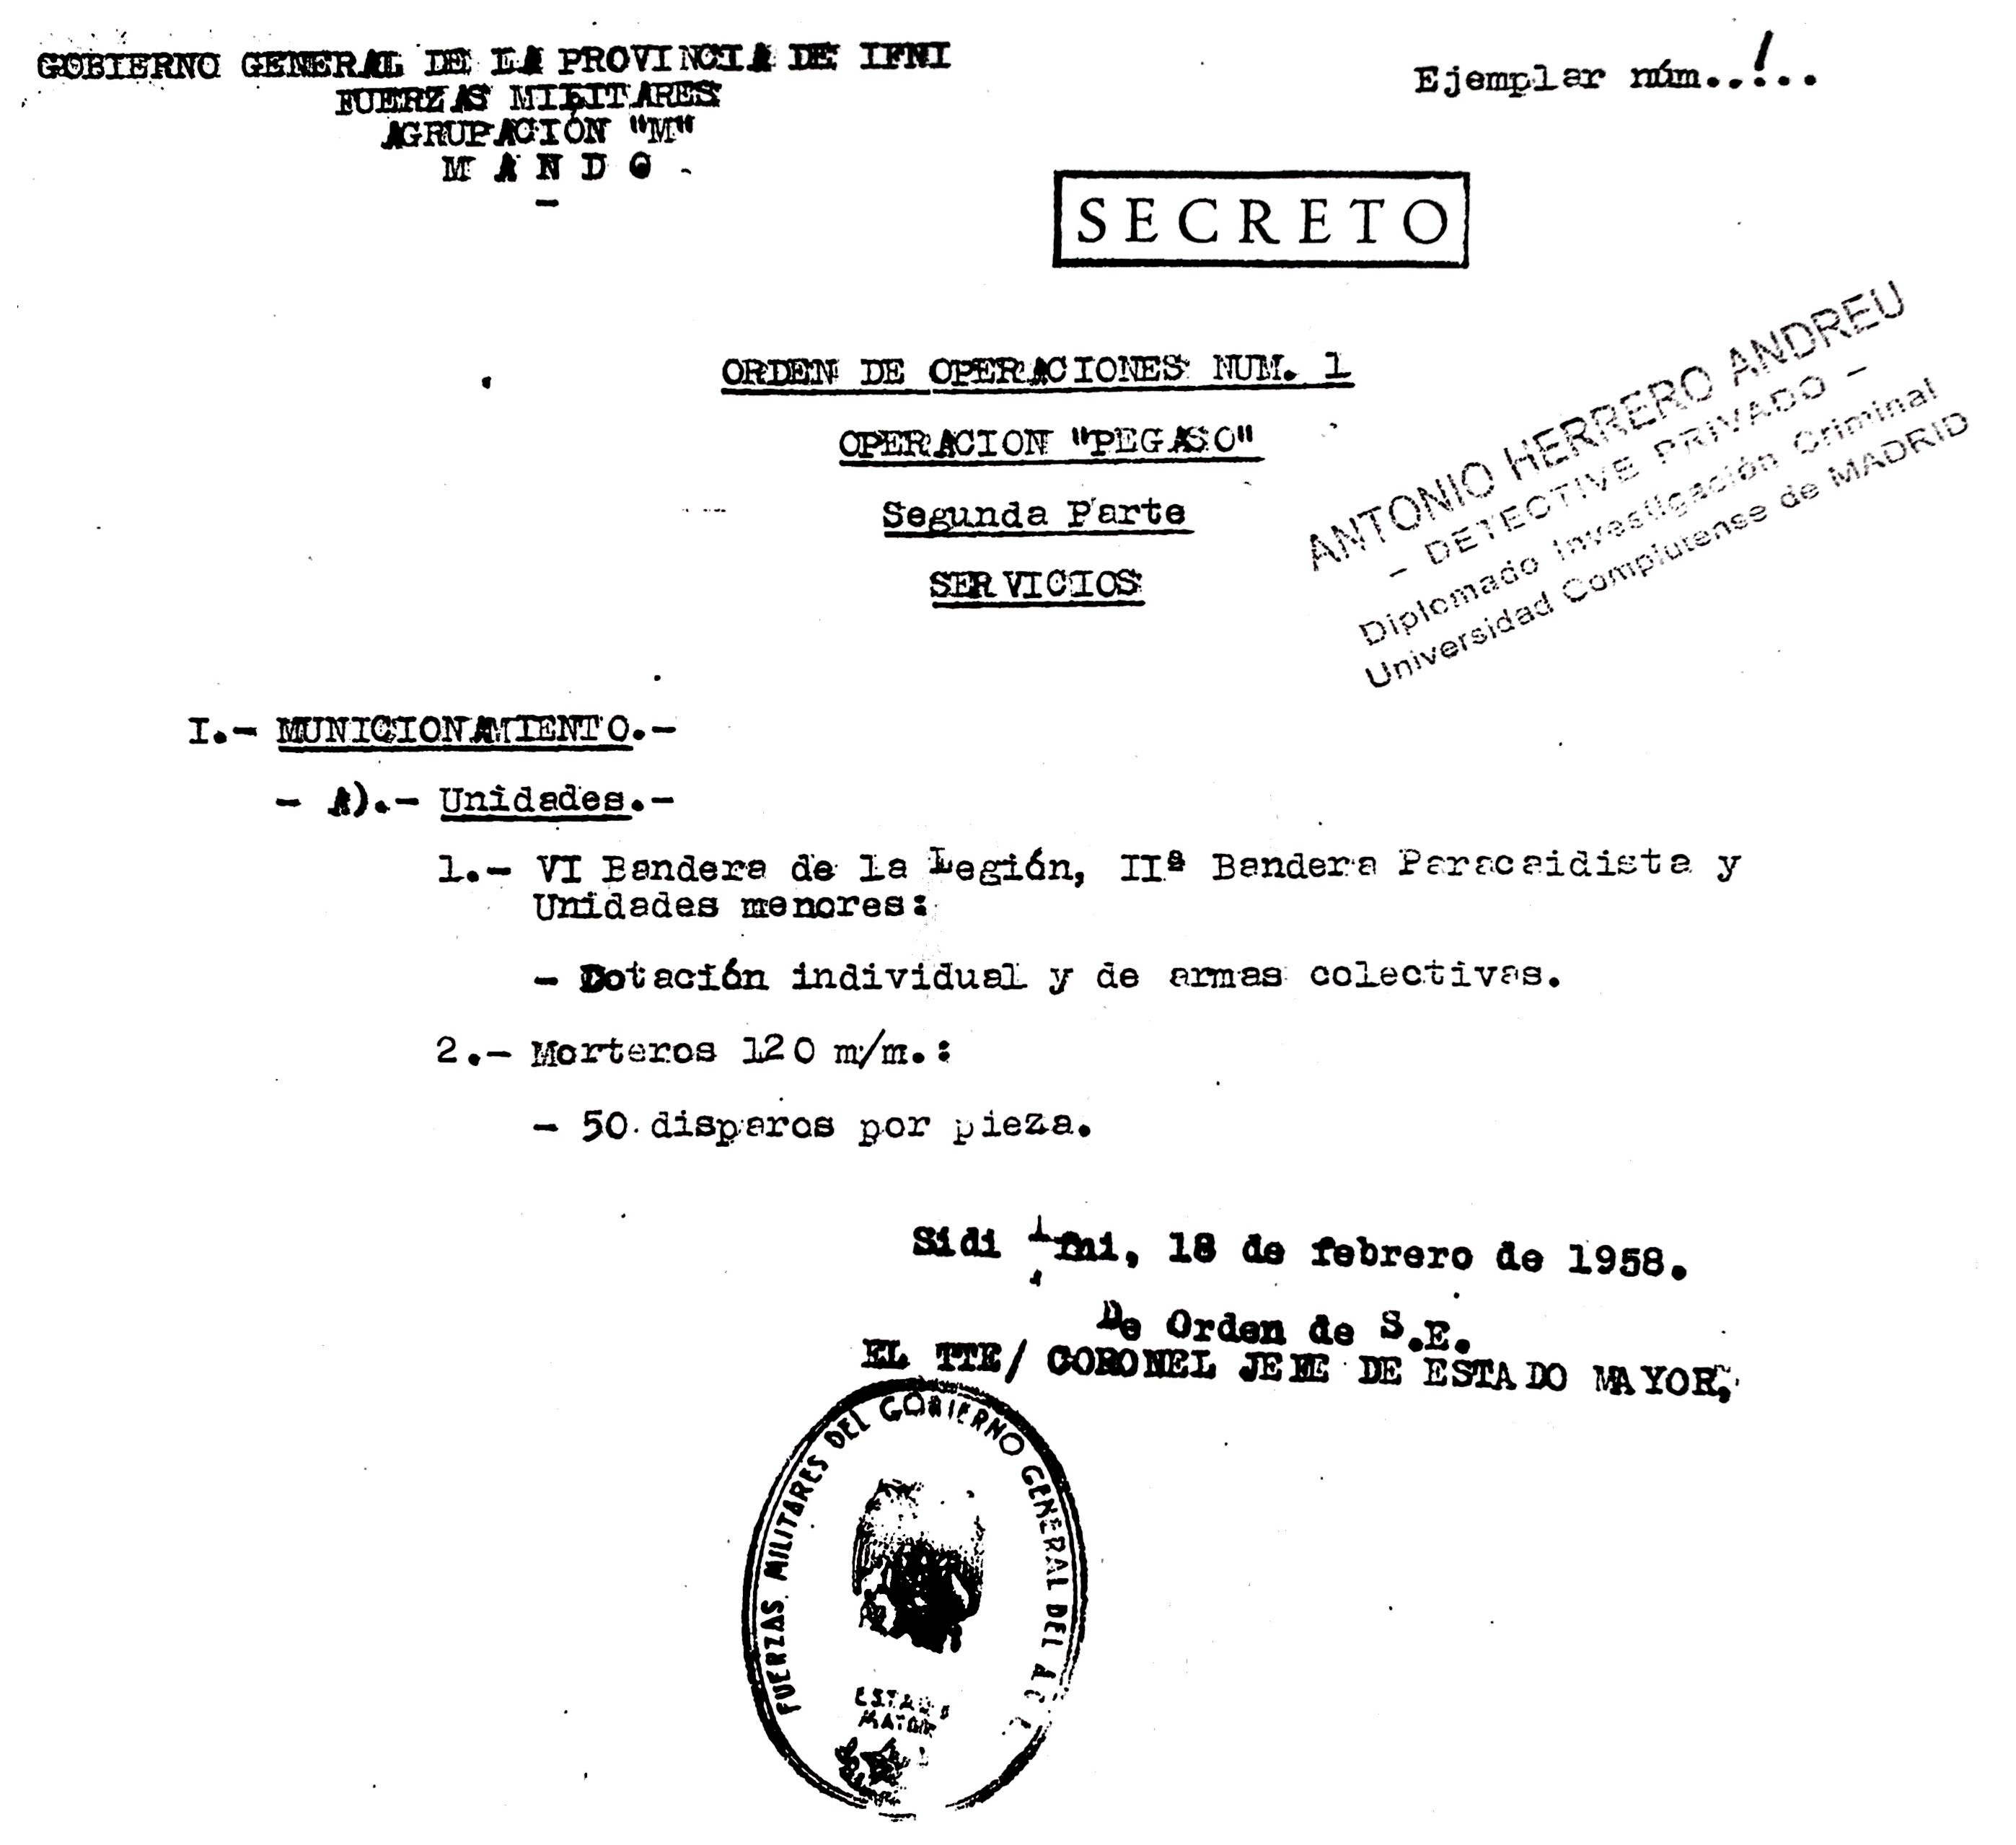 Documento secreto de la Operación Pegaso donde consta la intervención de la VI Bandera de la Legión